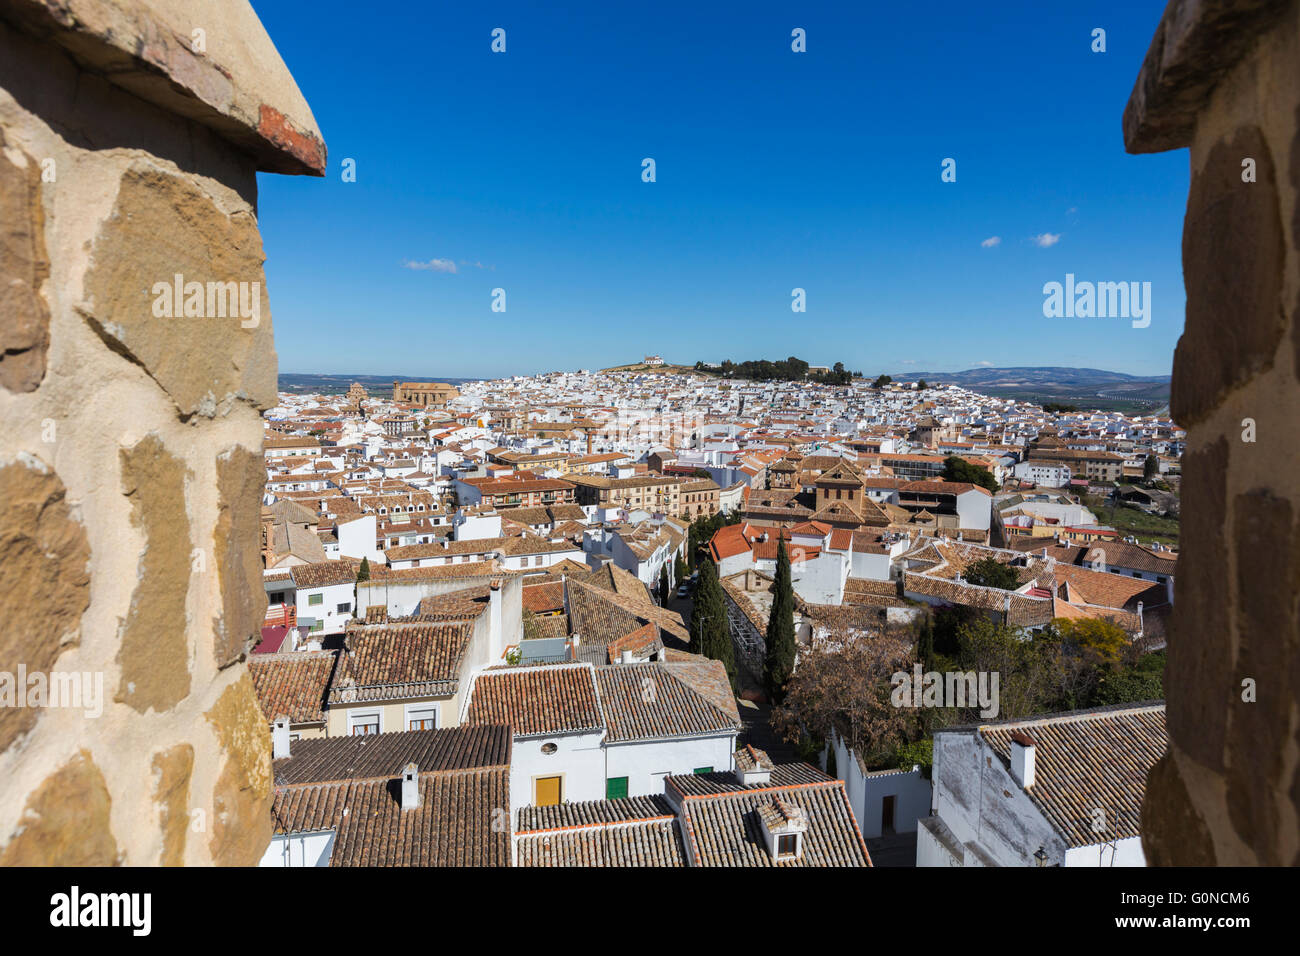 Antequera, la province de Malaga, Andalousie, Espagne du sud. La ville vu de mâchicoulis du La Alcazaba, la citadelle ou le château Banque D'Images